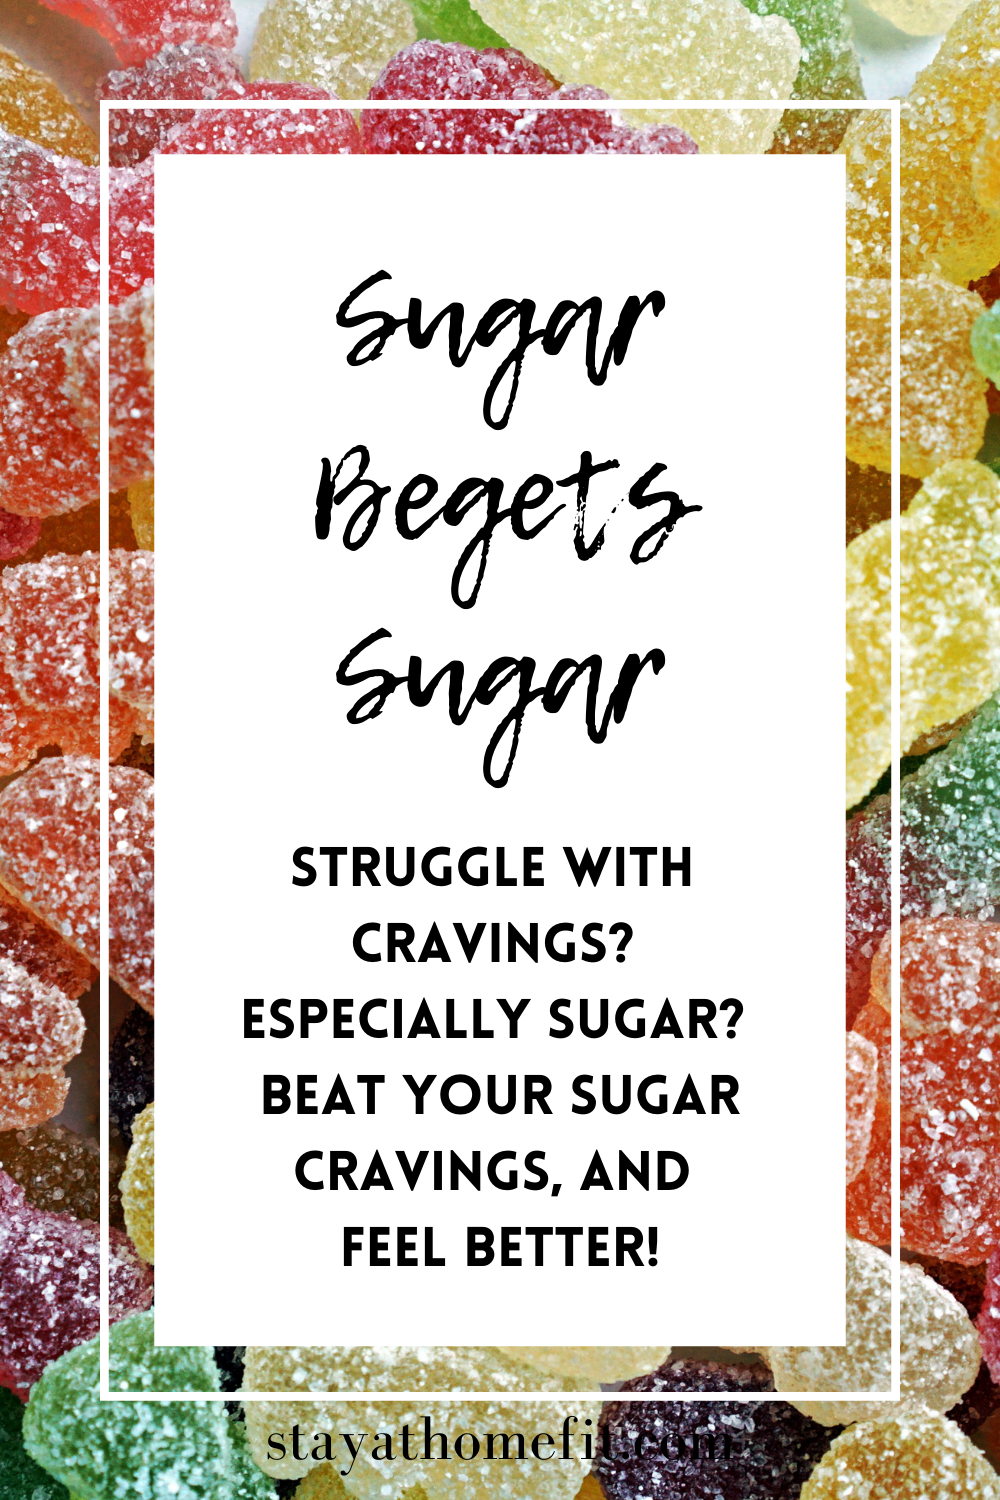 Sugar begets Sugar